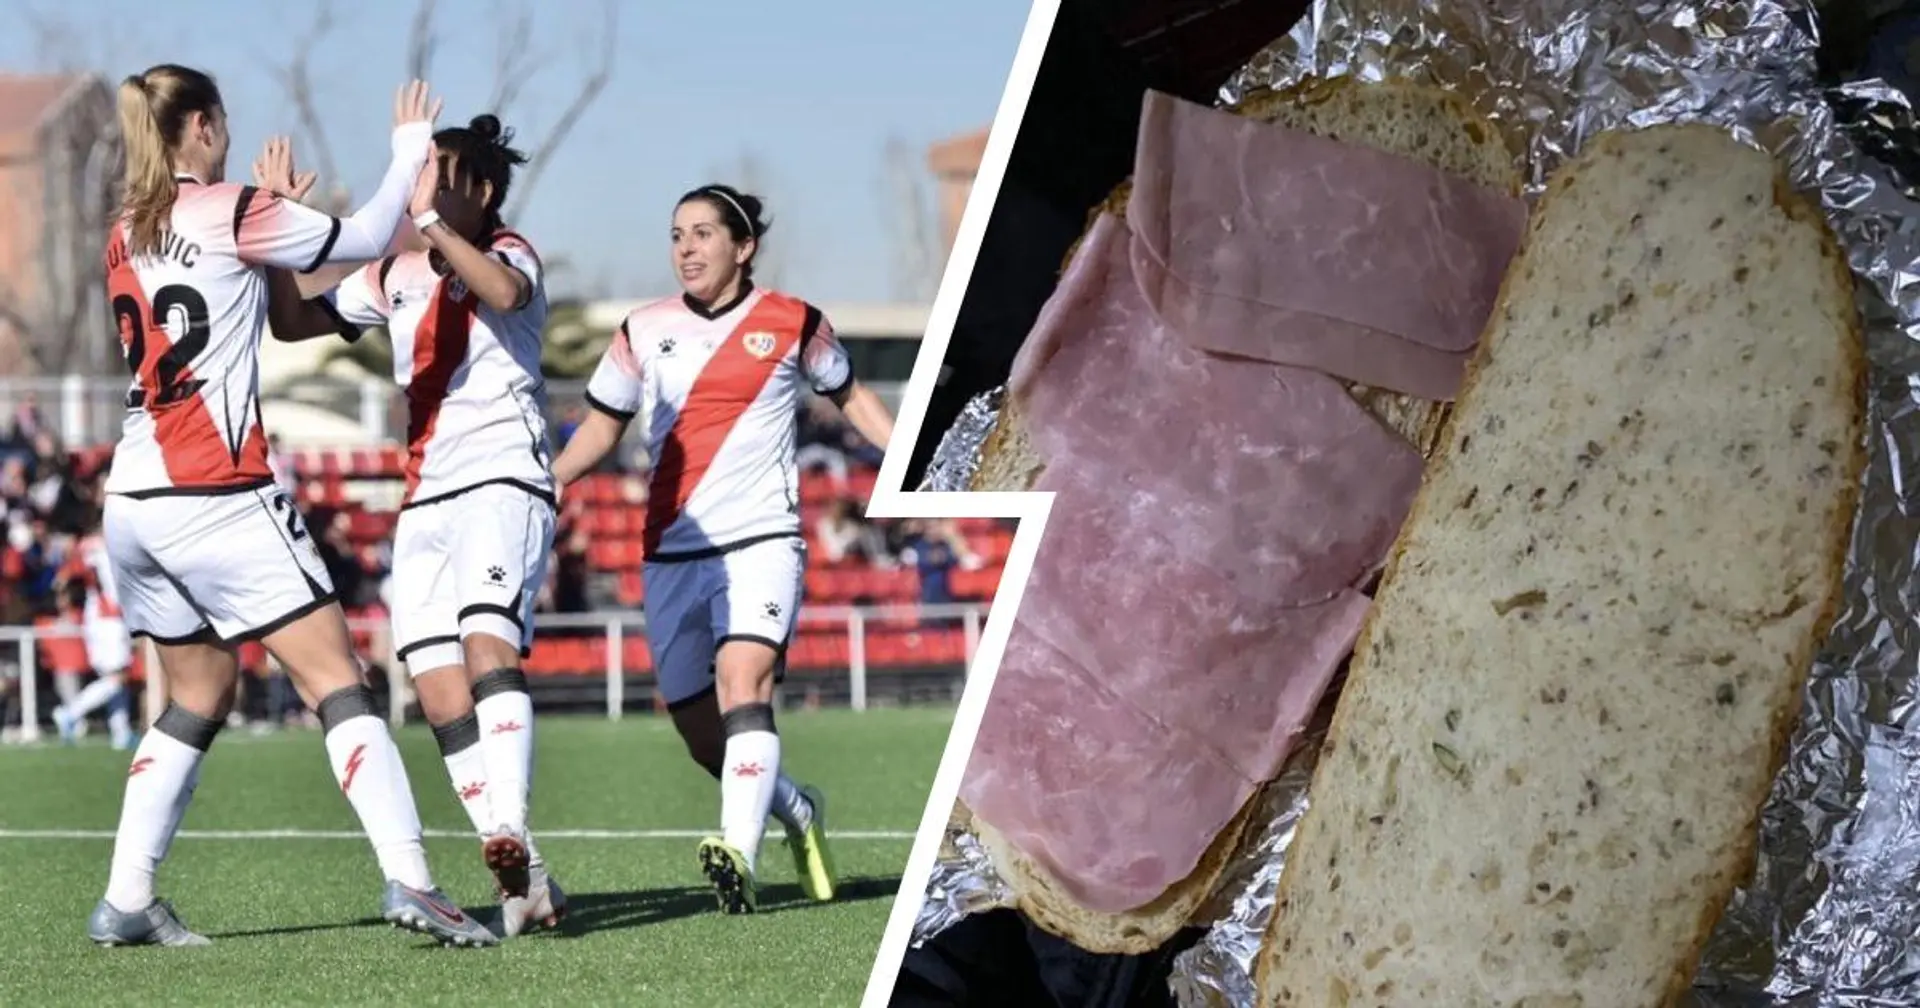 Spanische Frauenmannschaft beschwert sich, nachdem der Verein ihnen nach dem Spiel Schinkensandwiches gegeben hat